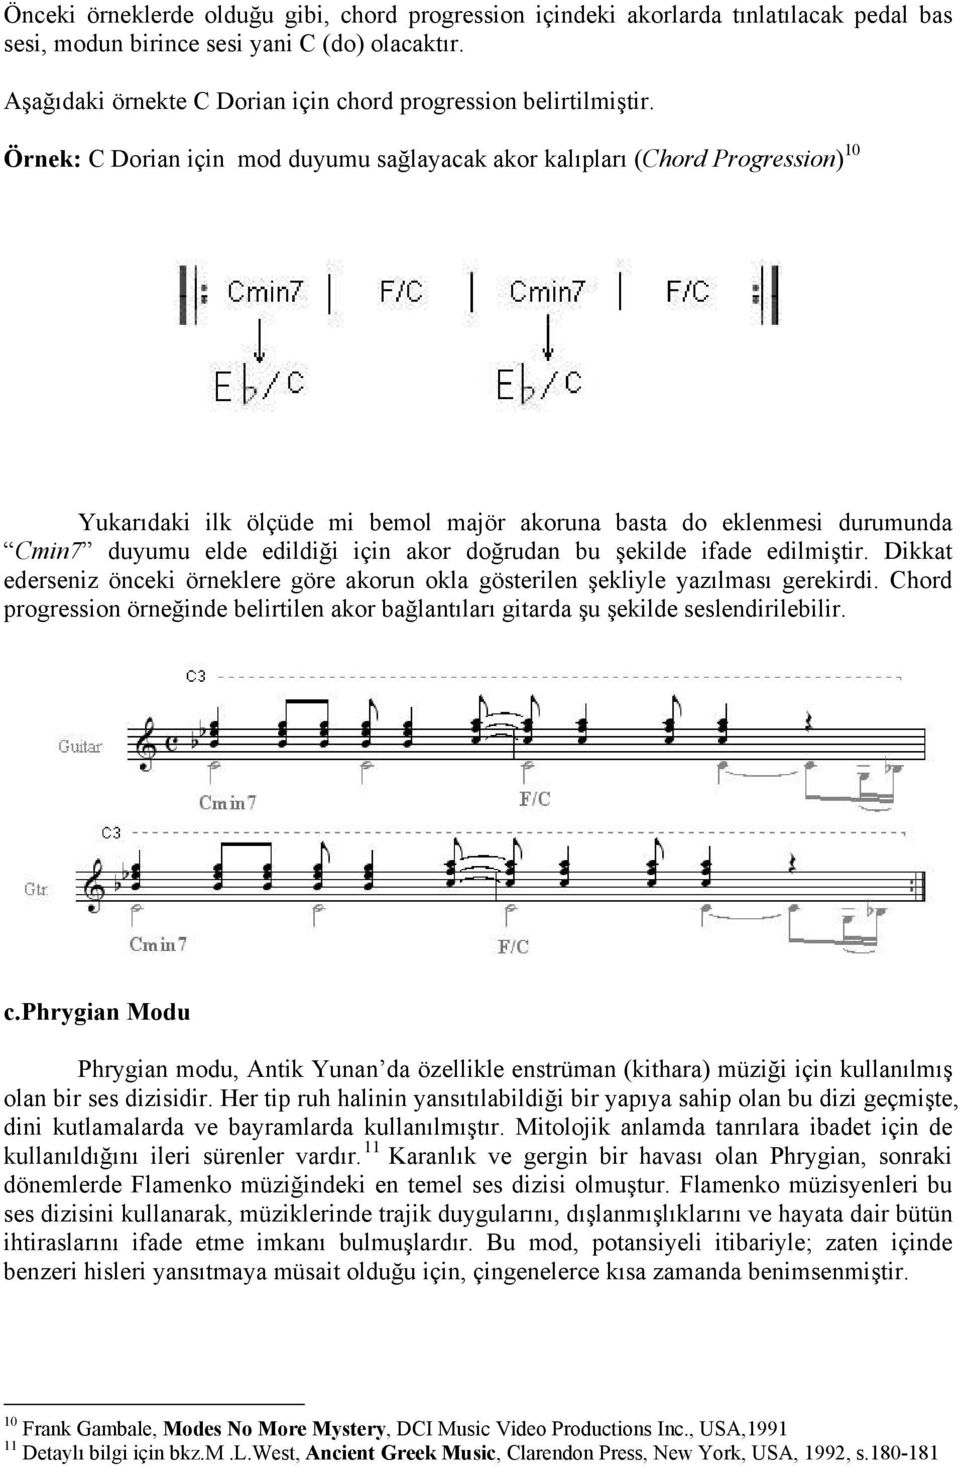 Örnek: C Dorian için mod duyumu sağlayacak akor kalıpları (Chord Progression) 10 Yukarıdaki ilk ölçüde mi bemol majör akoruna basta do eklenmesi durumunda Cmin7 duyumu elde edildiği için akor